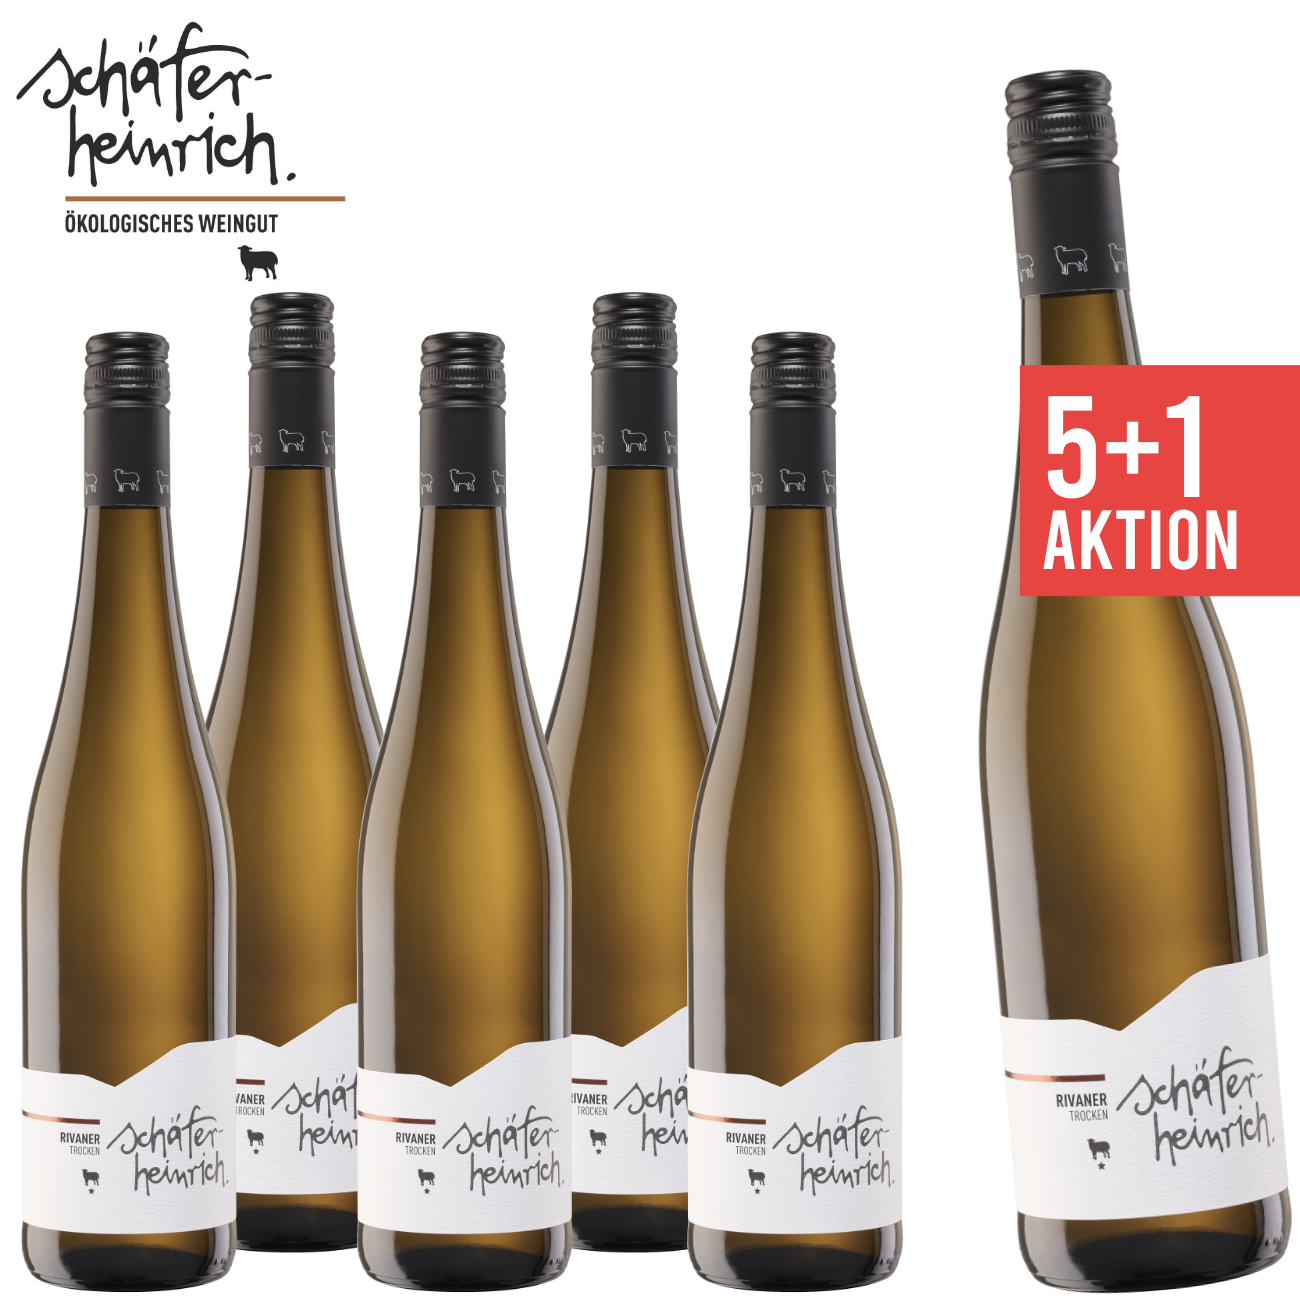 Schäfer-Heinrich Ökologisches Weingut, 5+1 Rivaner trocken 0,75 L Biowein - Angebot - Weinpaket - Weisswein